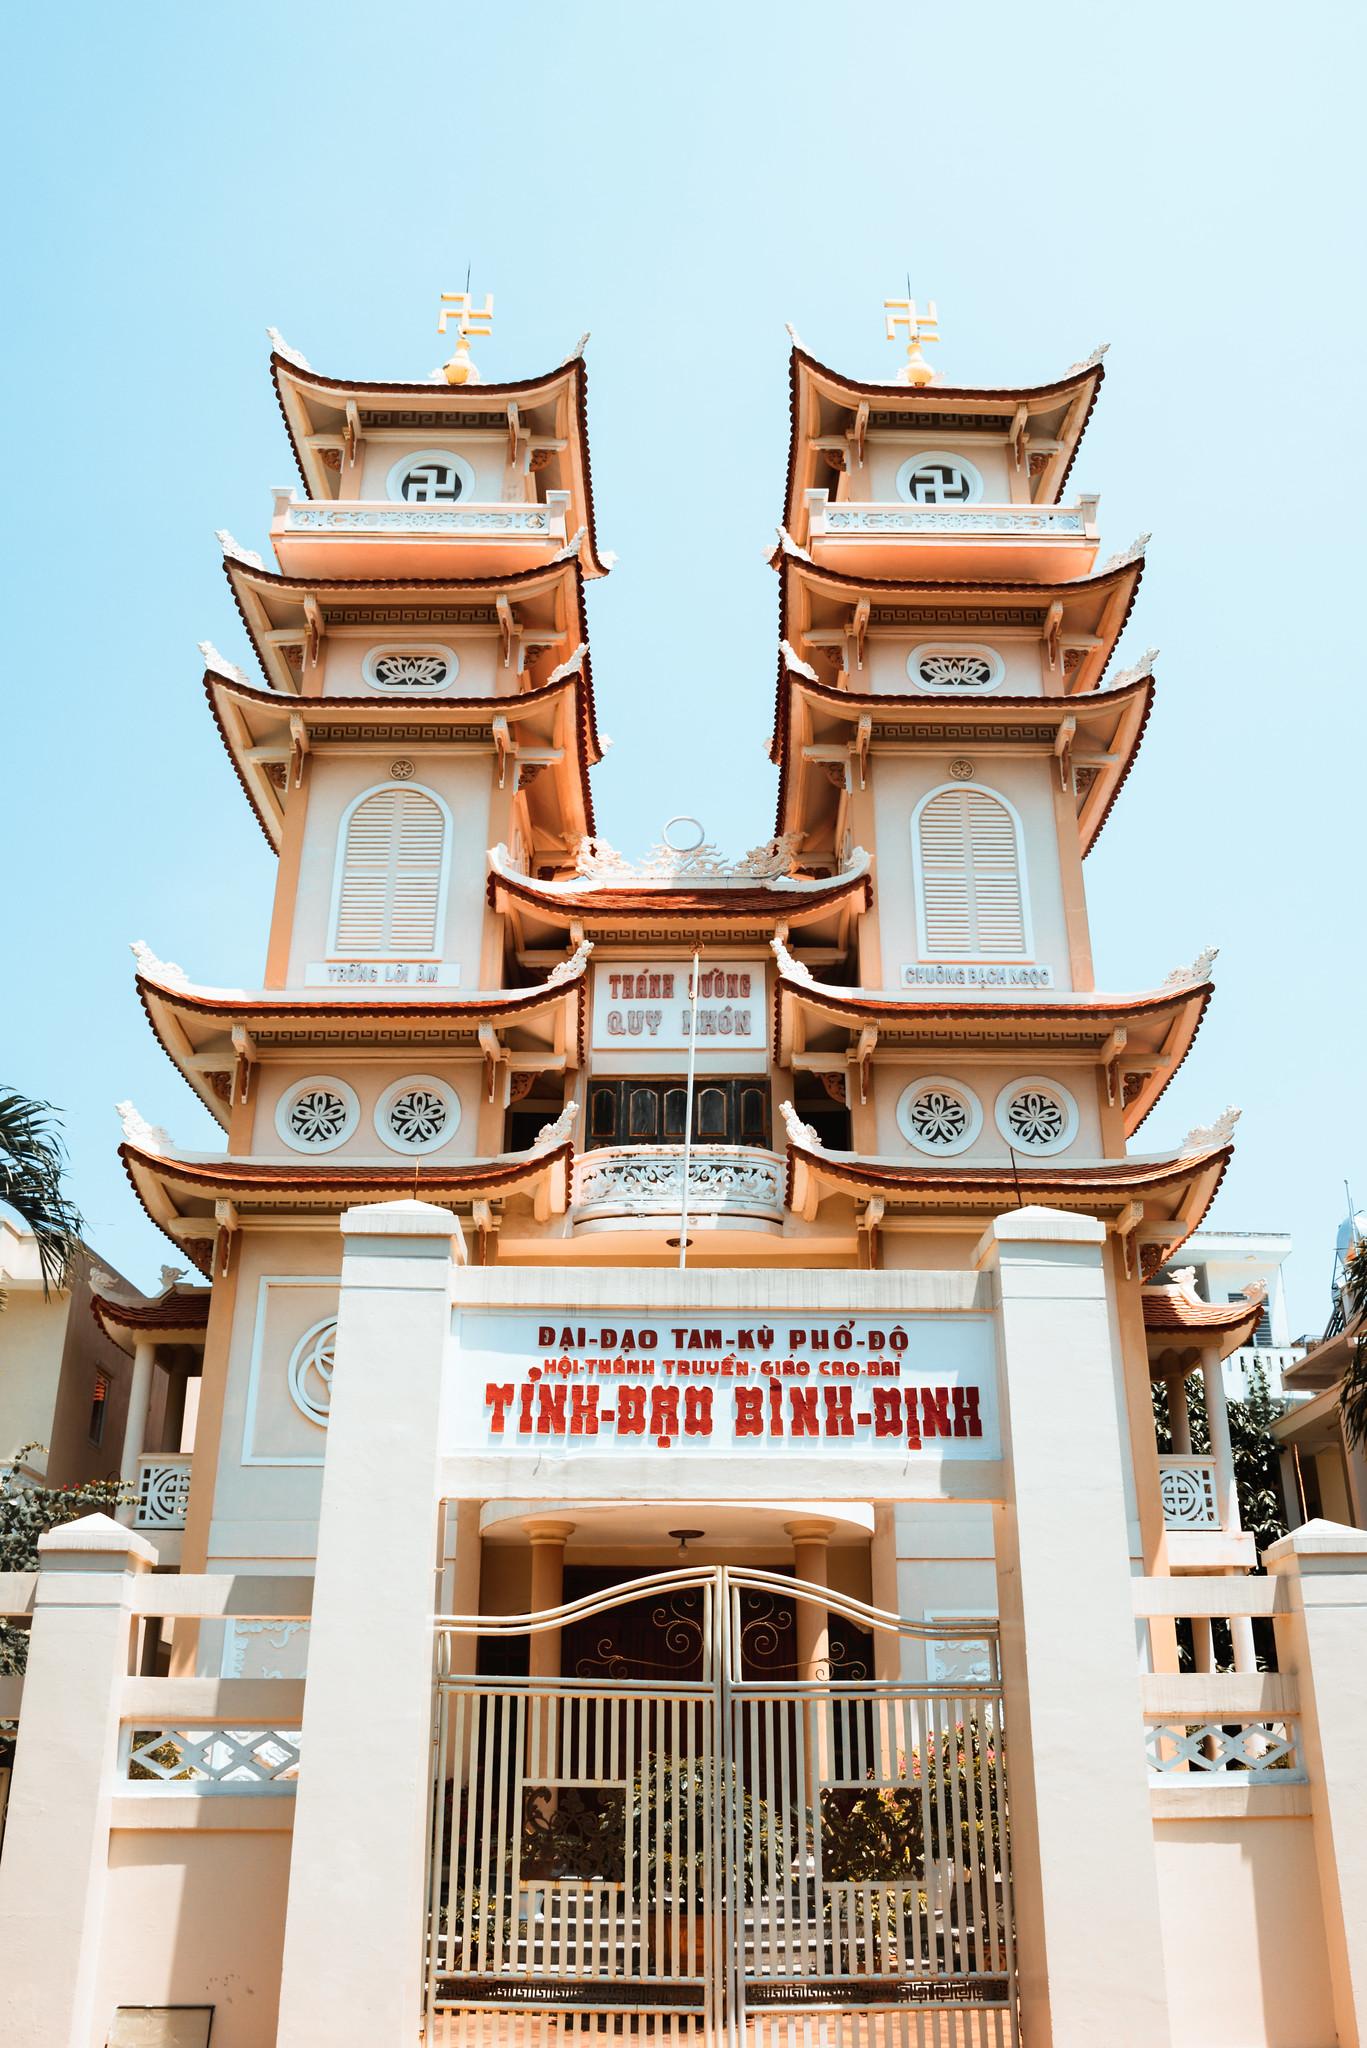 Cao Dai Temple at Quy Nhon